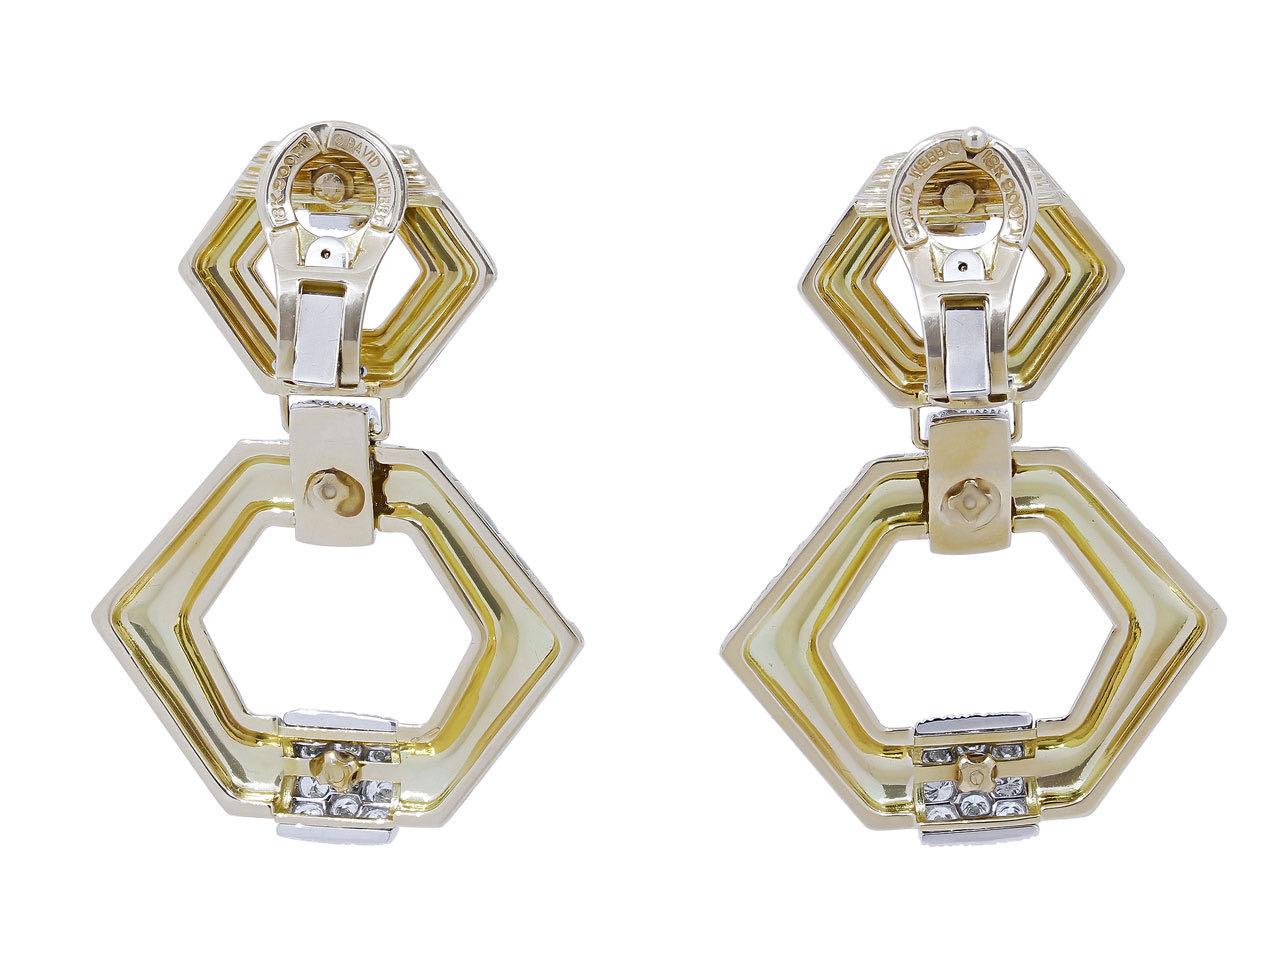 David Webb 'Tiger Stripe' Diamond Earrings in 18K Gold